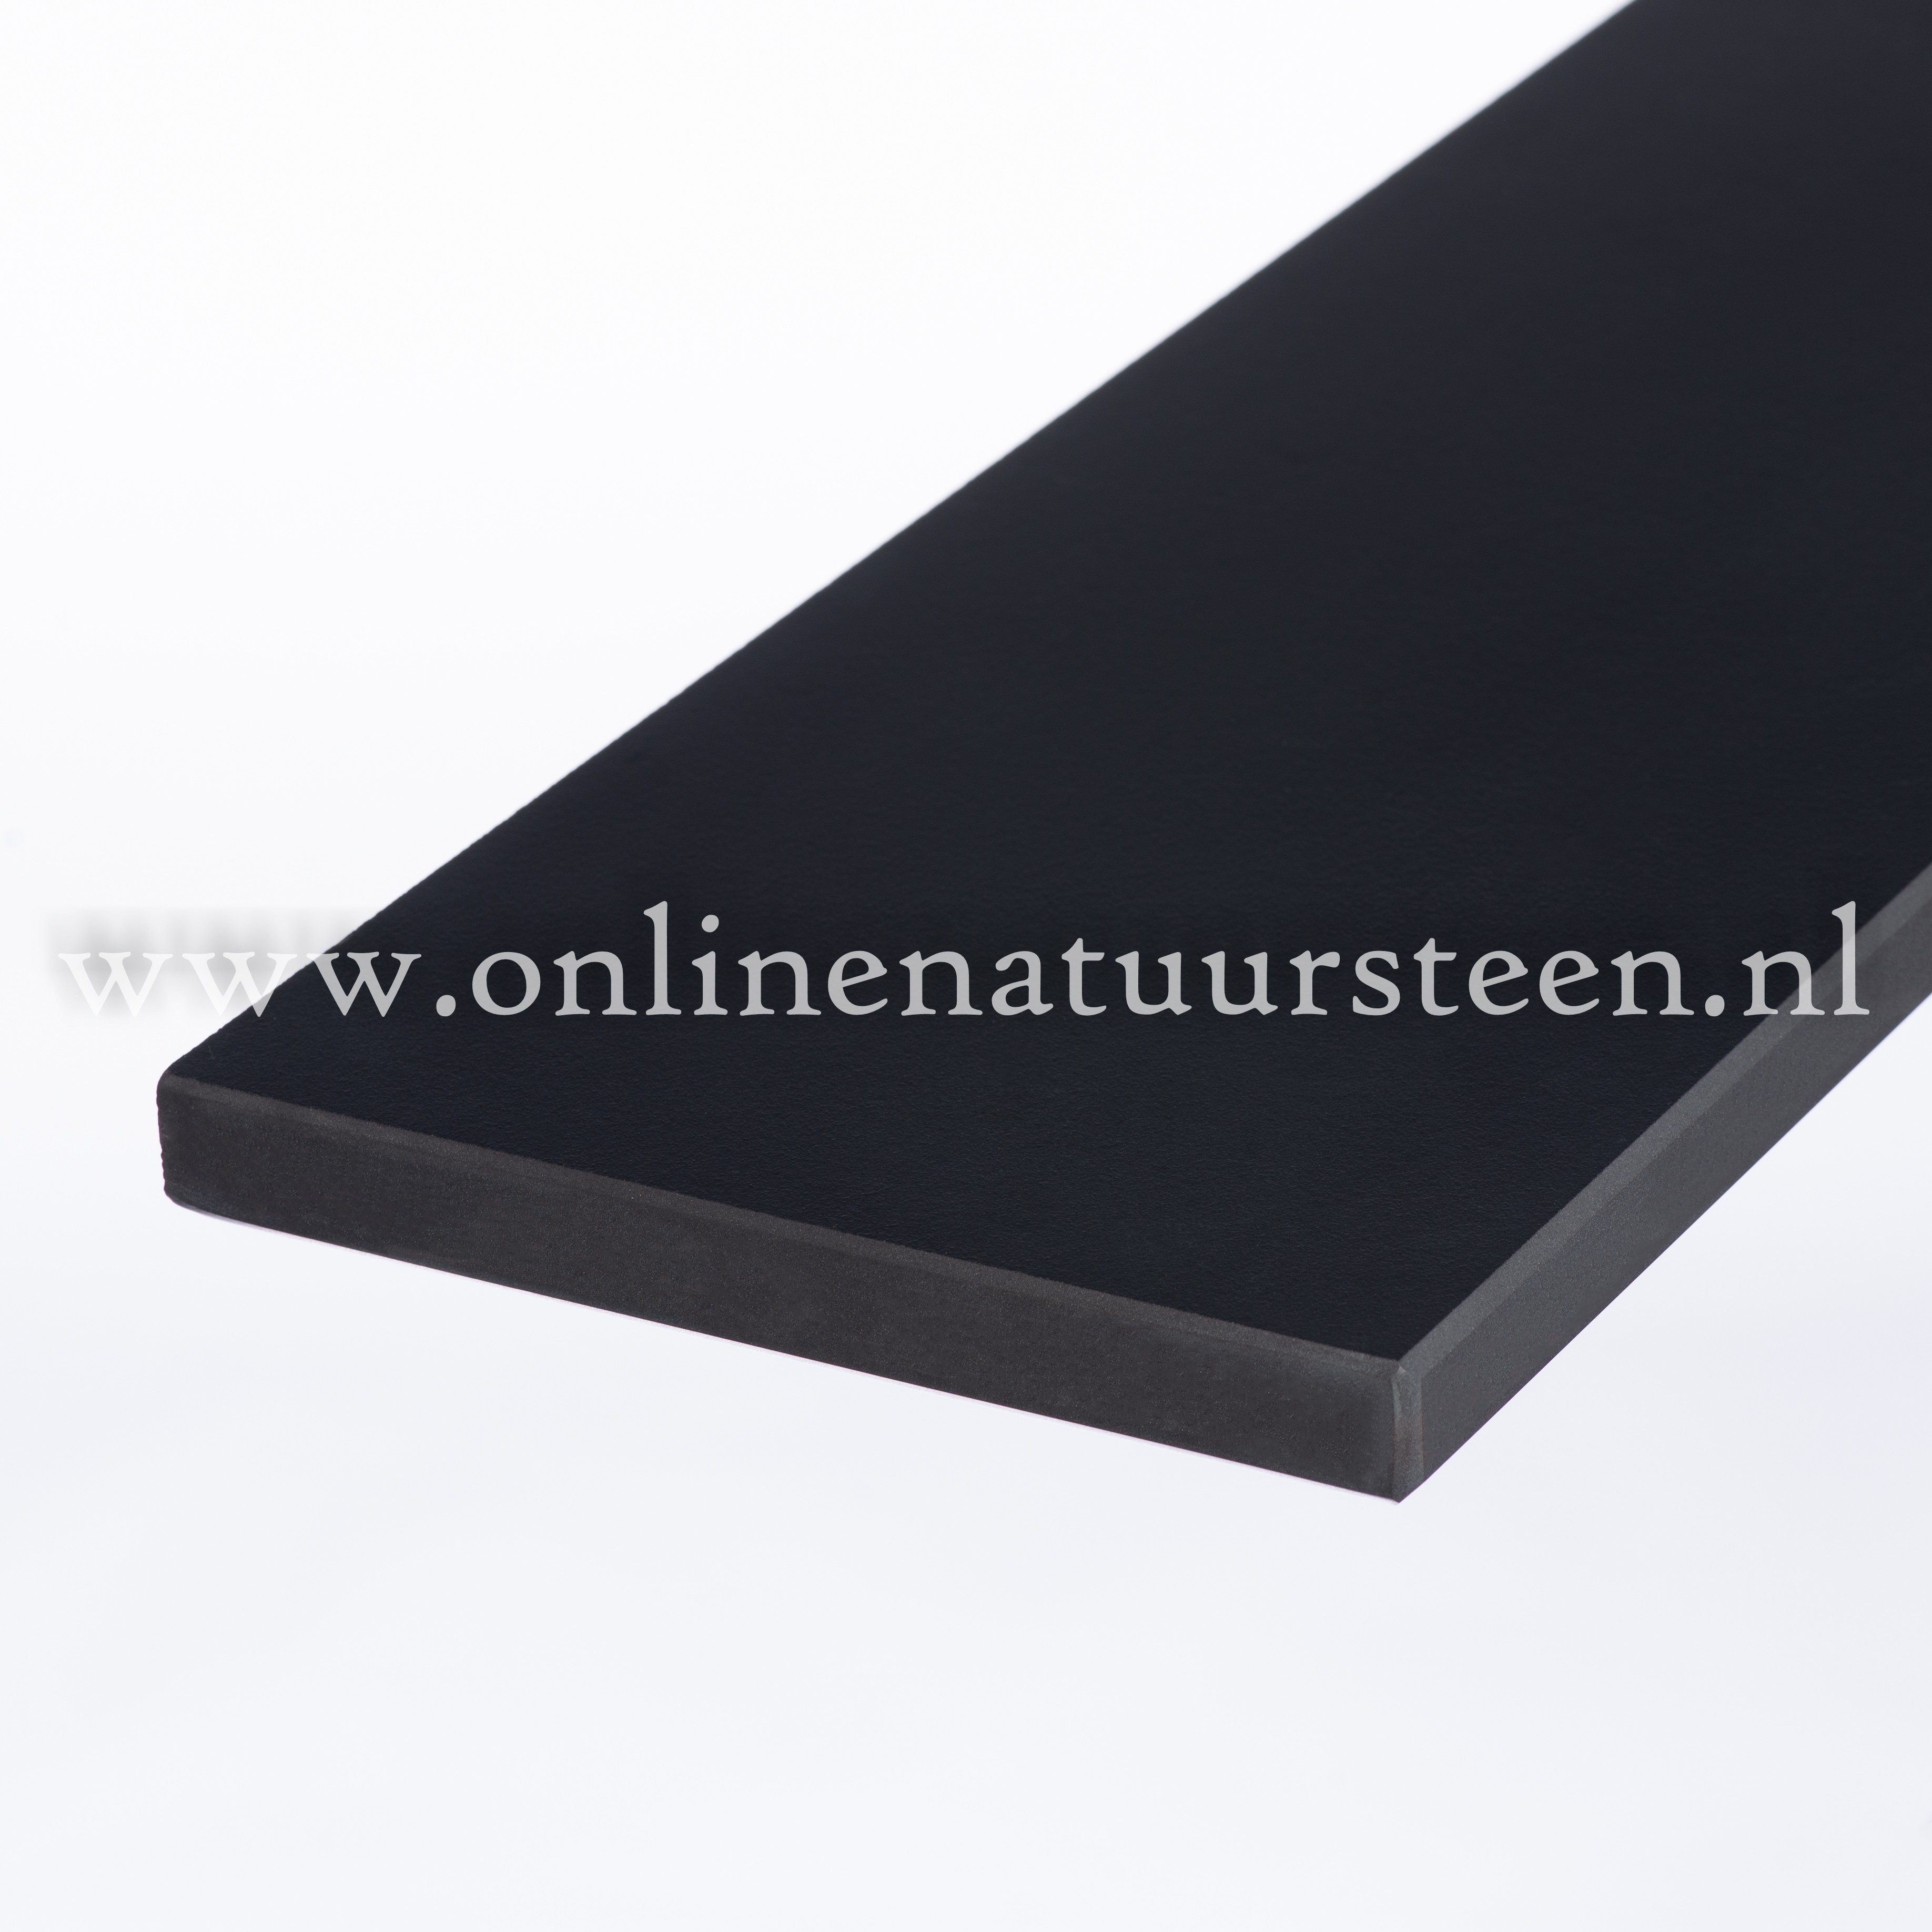 Online Natuursteen | | Ceramic-Stone Pure Black - cm.